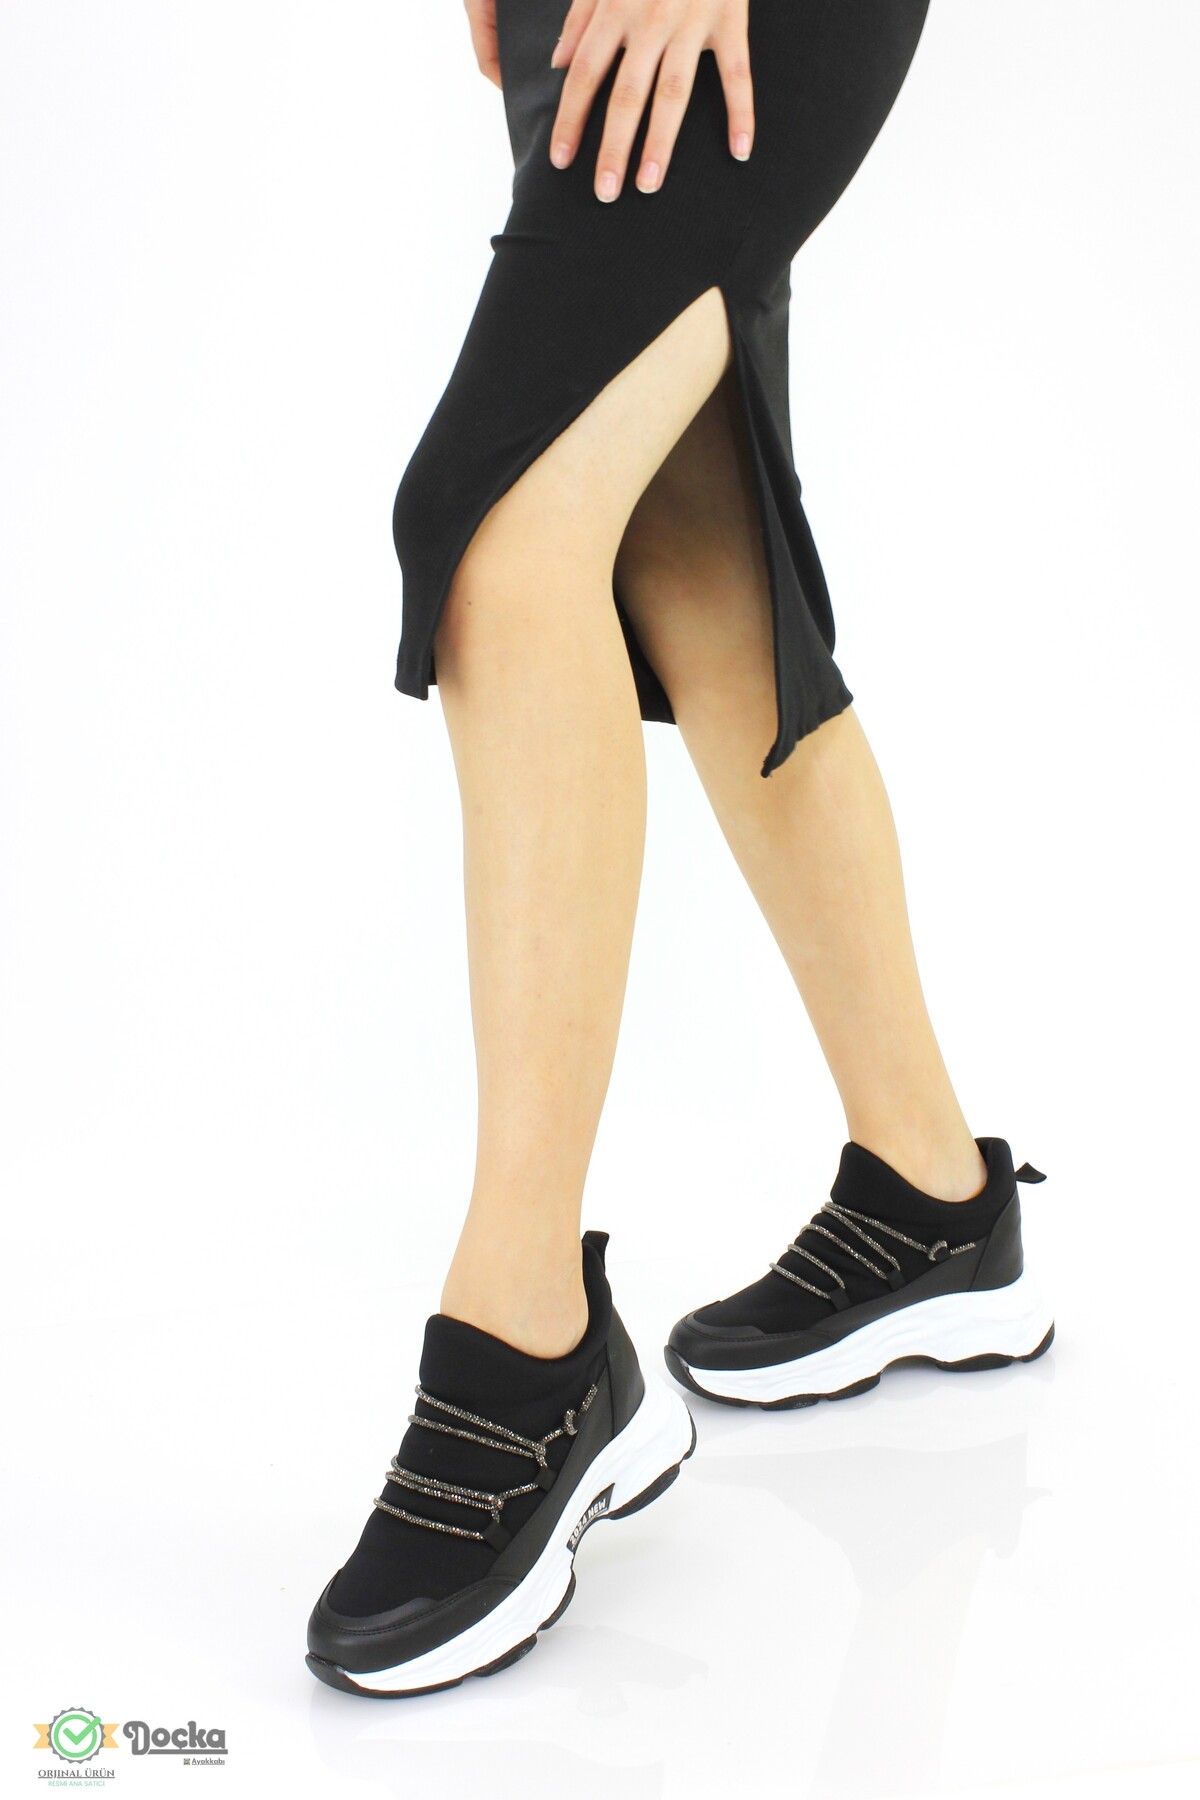 DOCKA Kadın Gizli Dolgu Topuk Likralı Bağcıksız Spor Ayakkabı FR24/SP3006